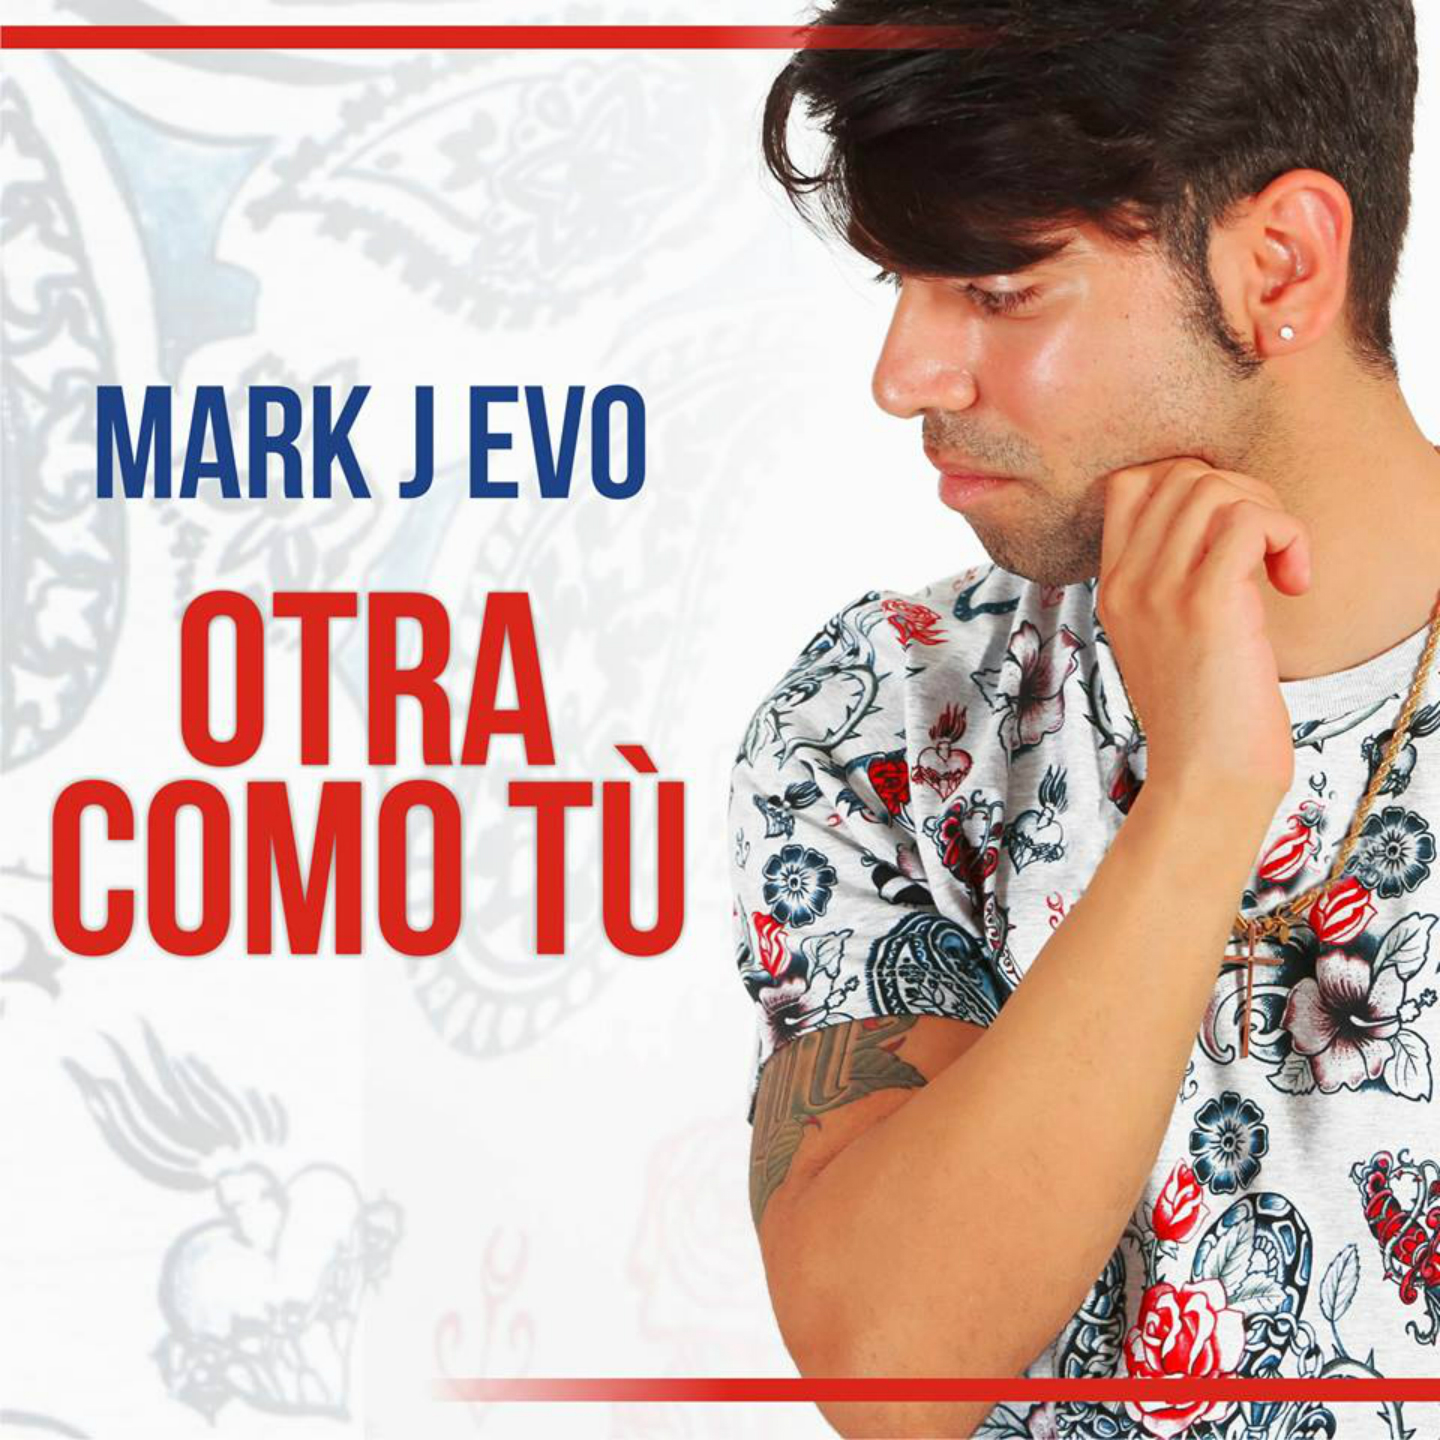 Ecco Mark J Evo, il cantautore napoletano che ama la musica latina. 